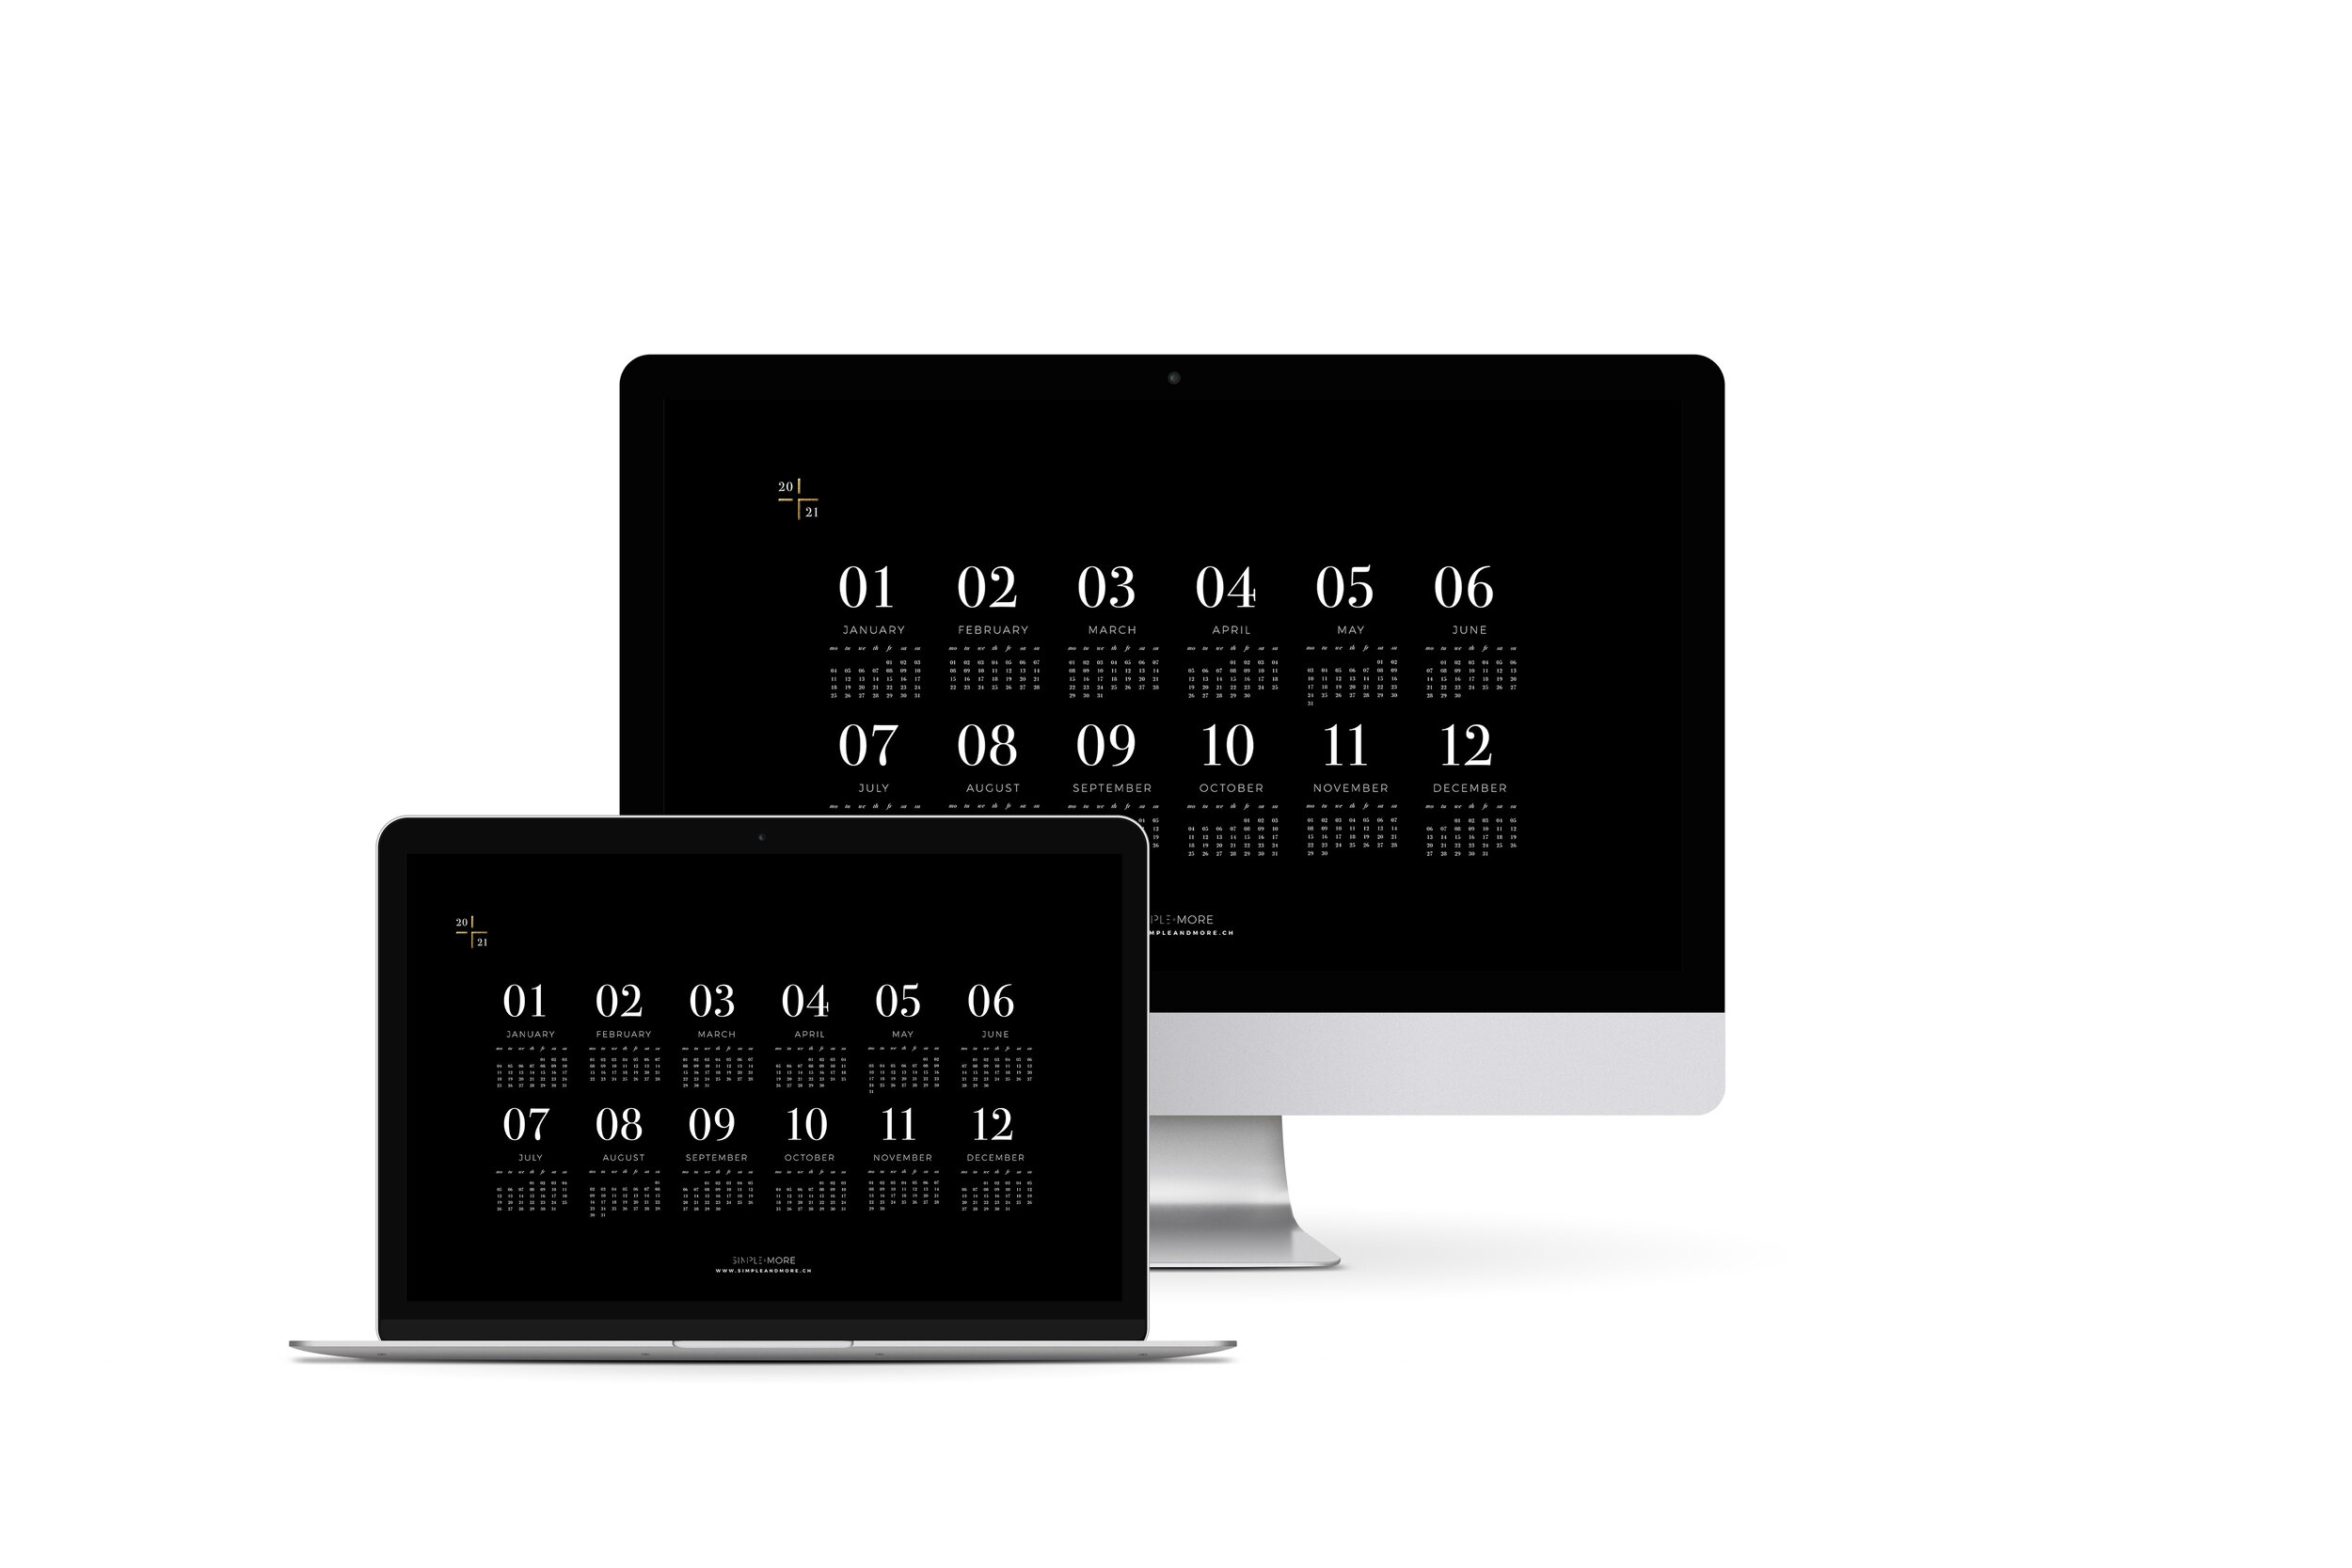 SM_Jahreskalender_2021_iMac_Macbook_englisch.jpg